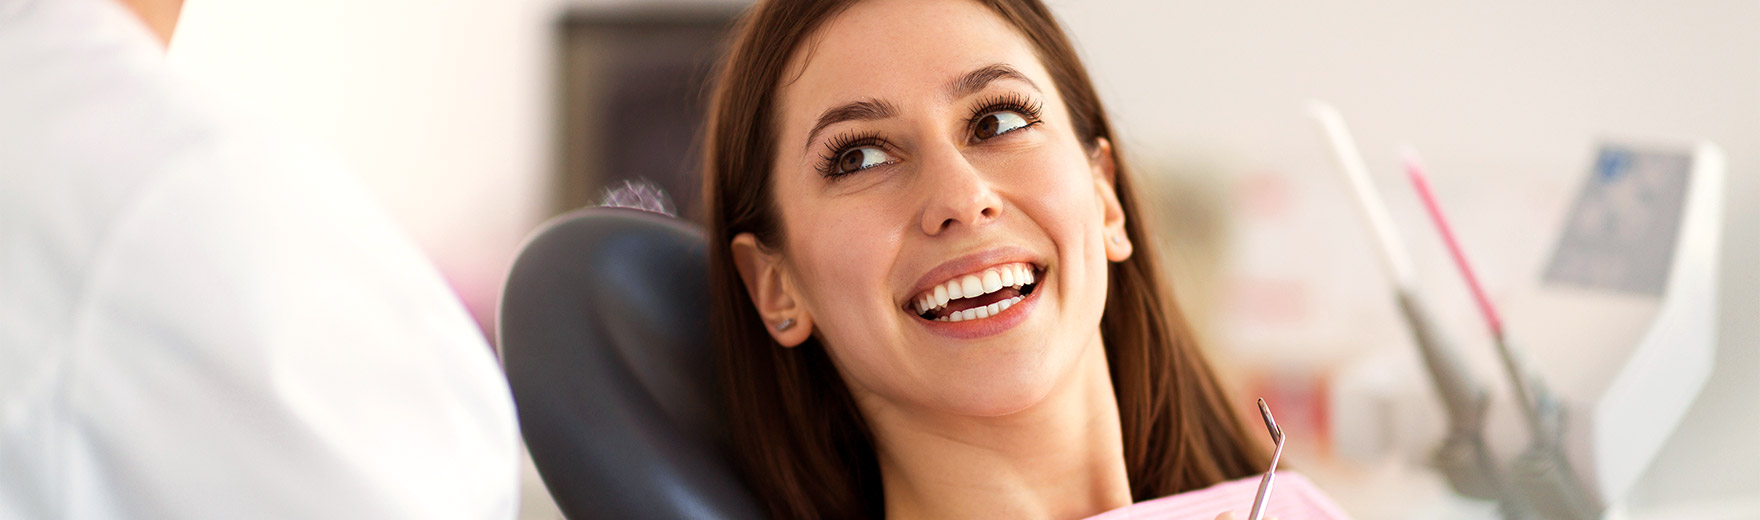 Schöne Zähne für Lünen, Derne: Bleaching, Veneers, Zahnersatz